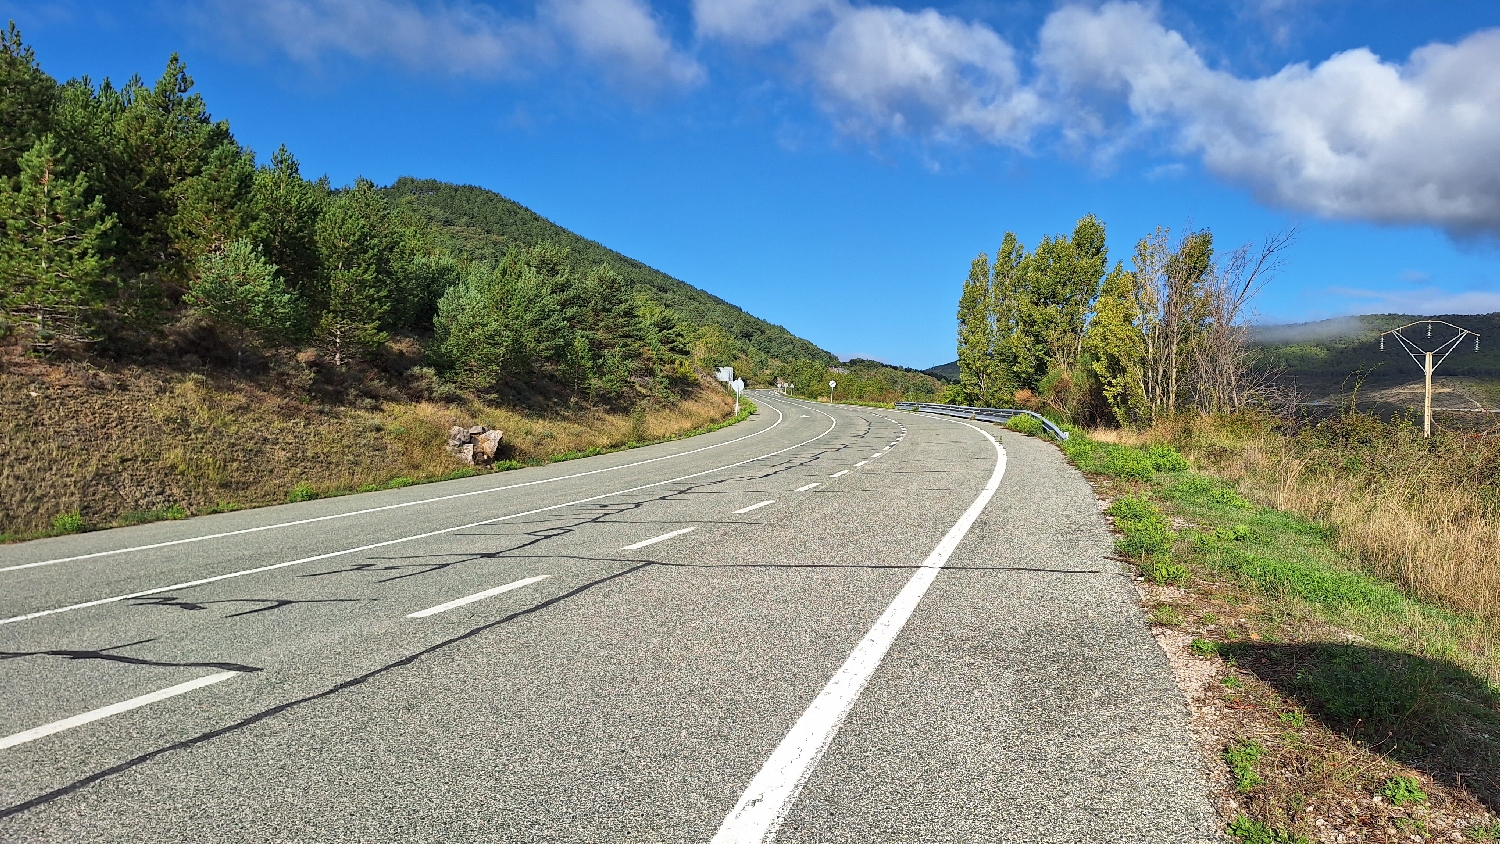 El Camino, Aragon út, majdnem másfél órán keresztül országút mellett kell gyalogolni